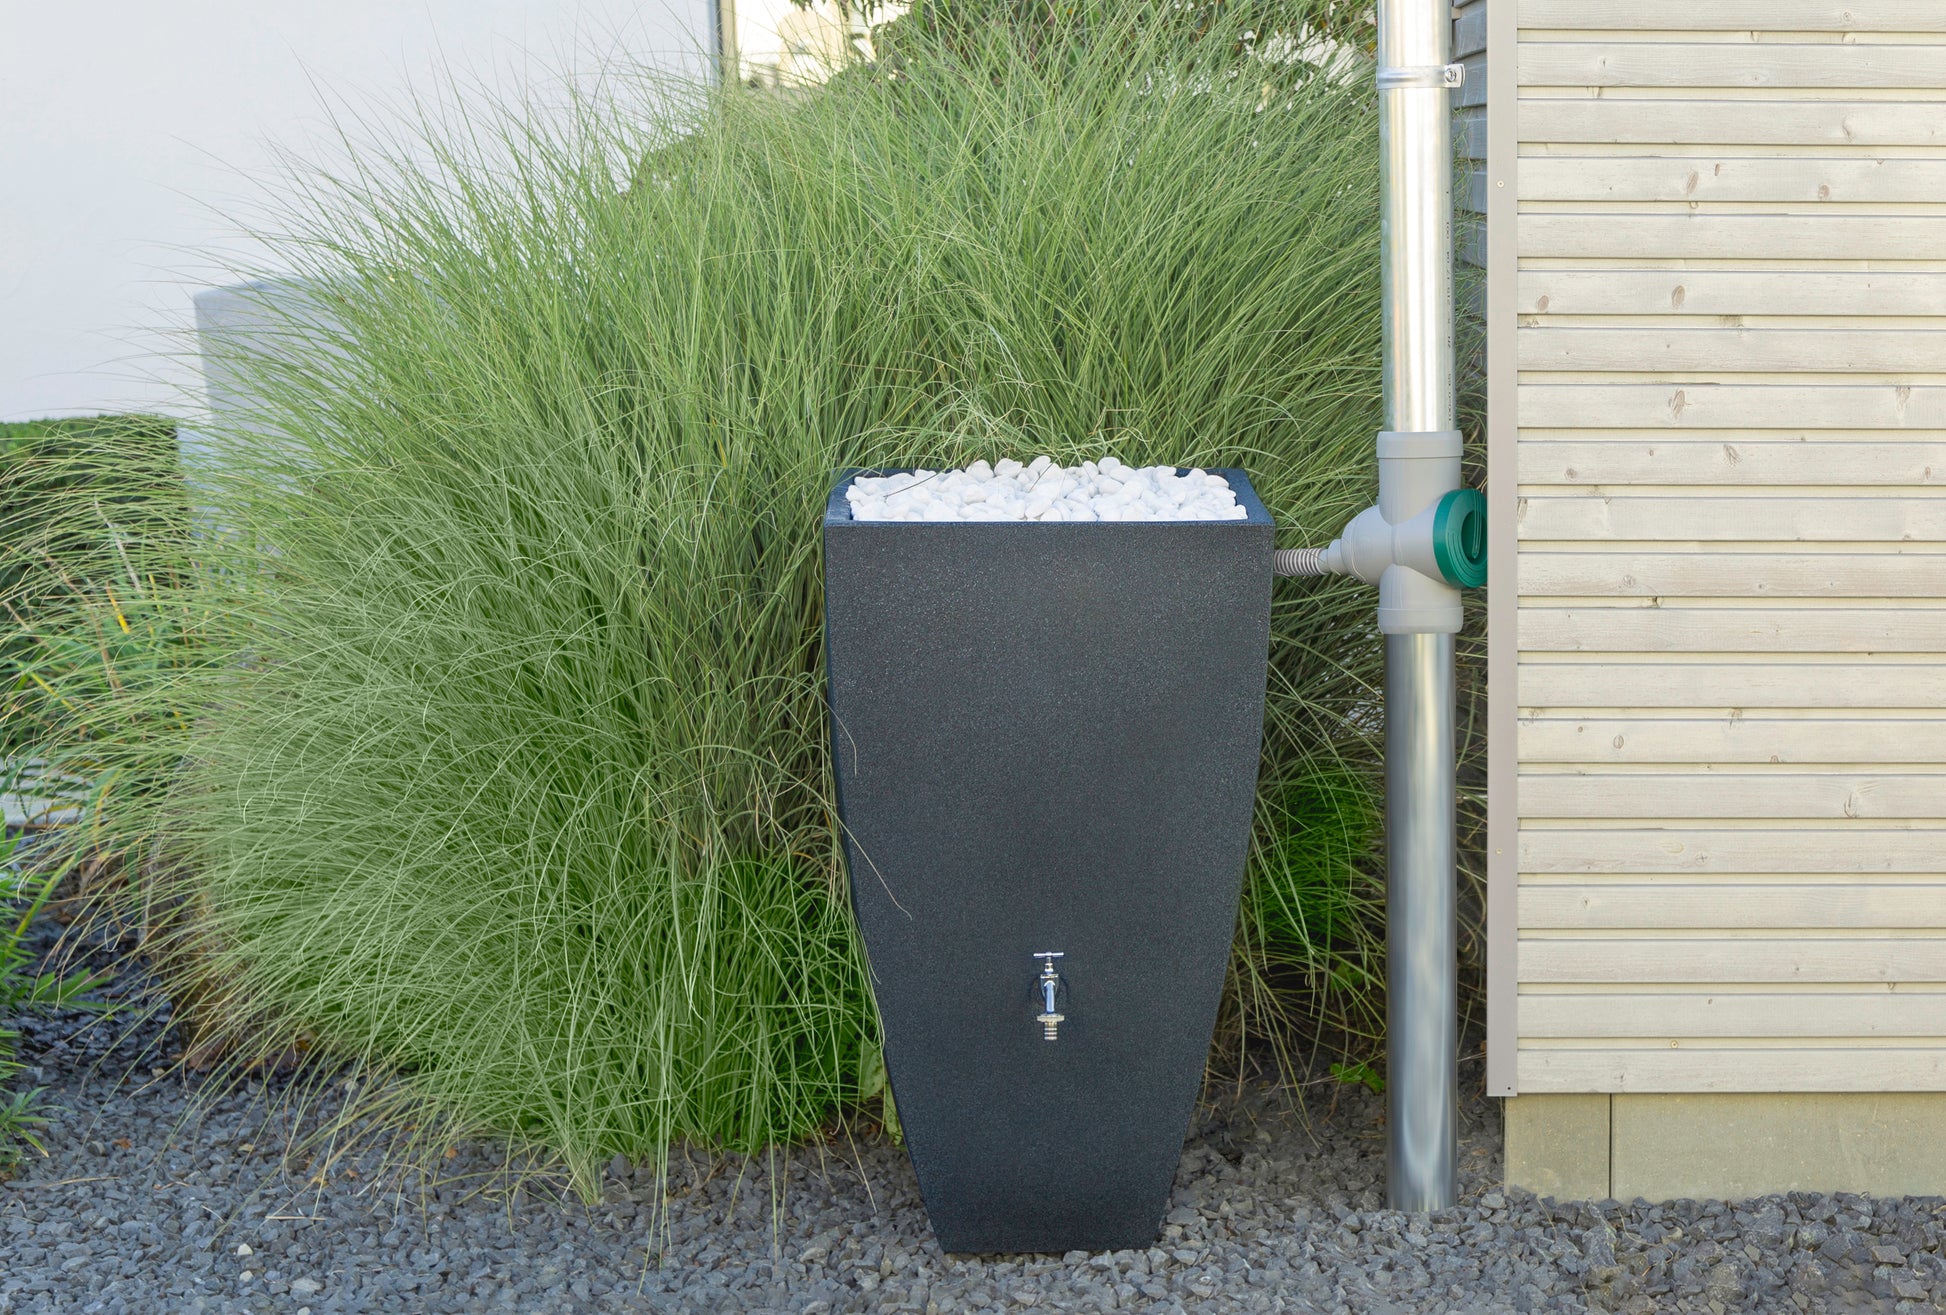 Moderne Regenwasser-Sammeltonne neben Ziergras an einem Haus aufgestellt mit angeschlossenem YourCasa® Anschlussschlauch 32mm für Regensammler inklusive Handbohrer von yourcasa-de.